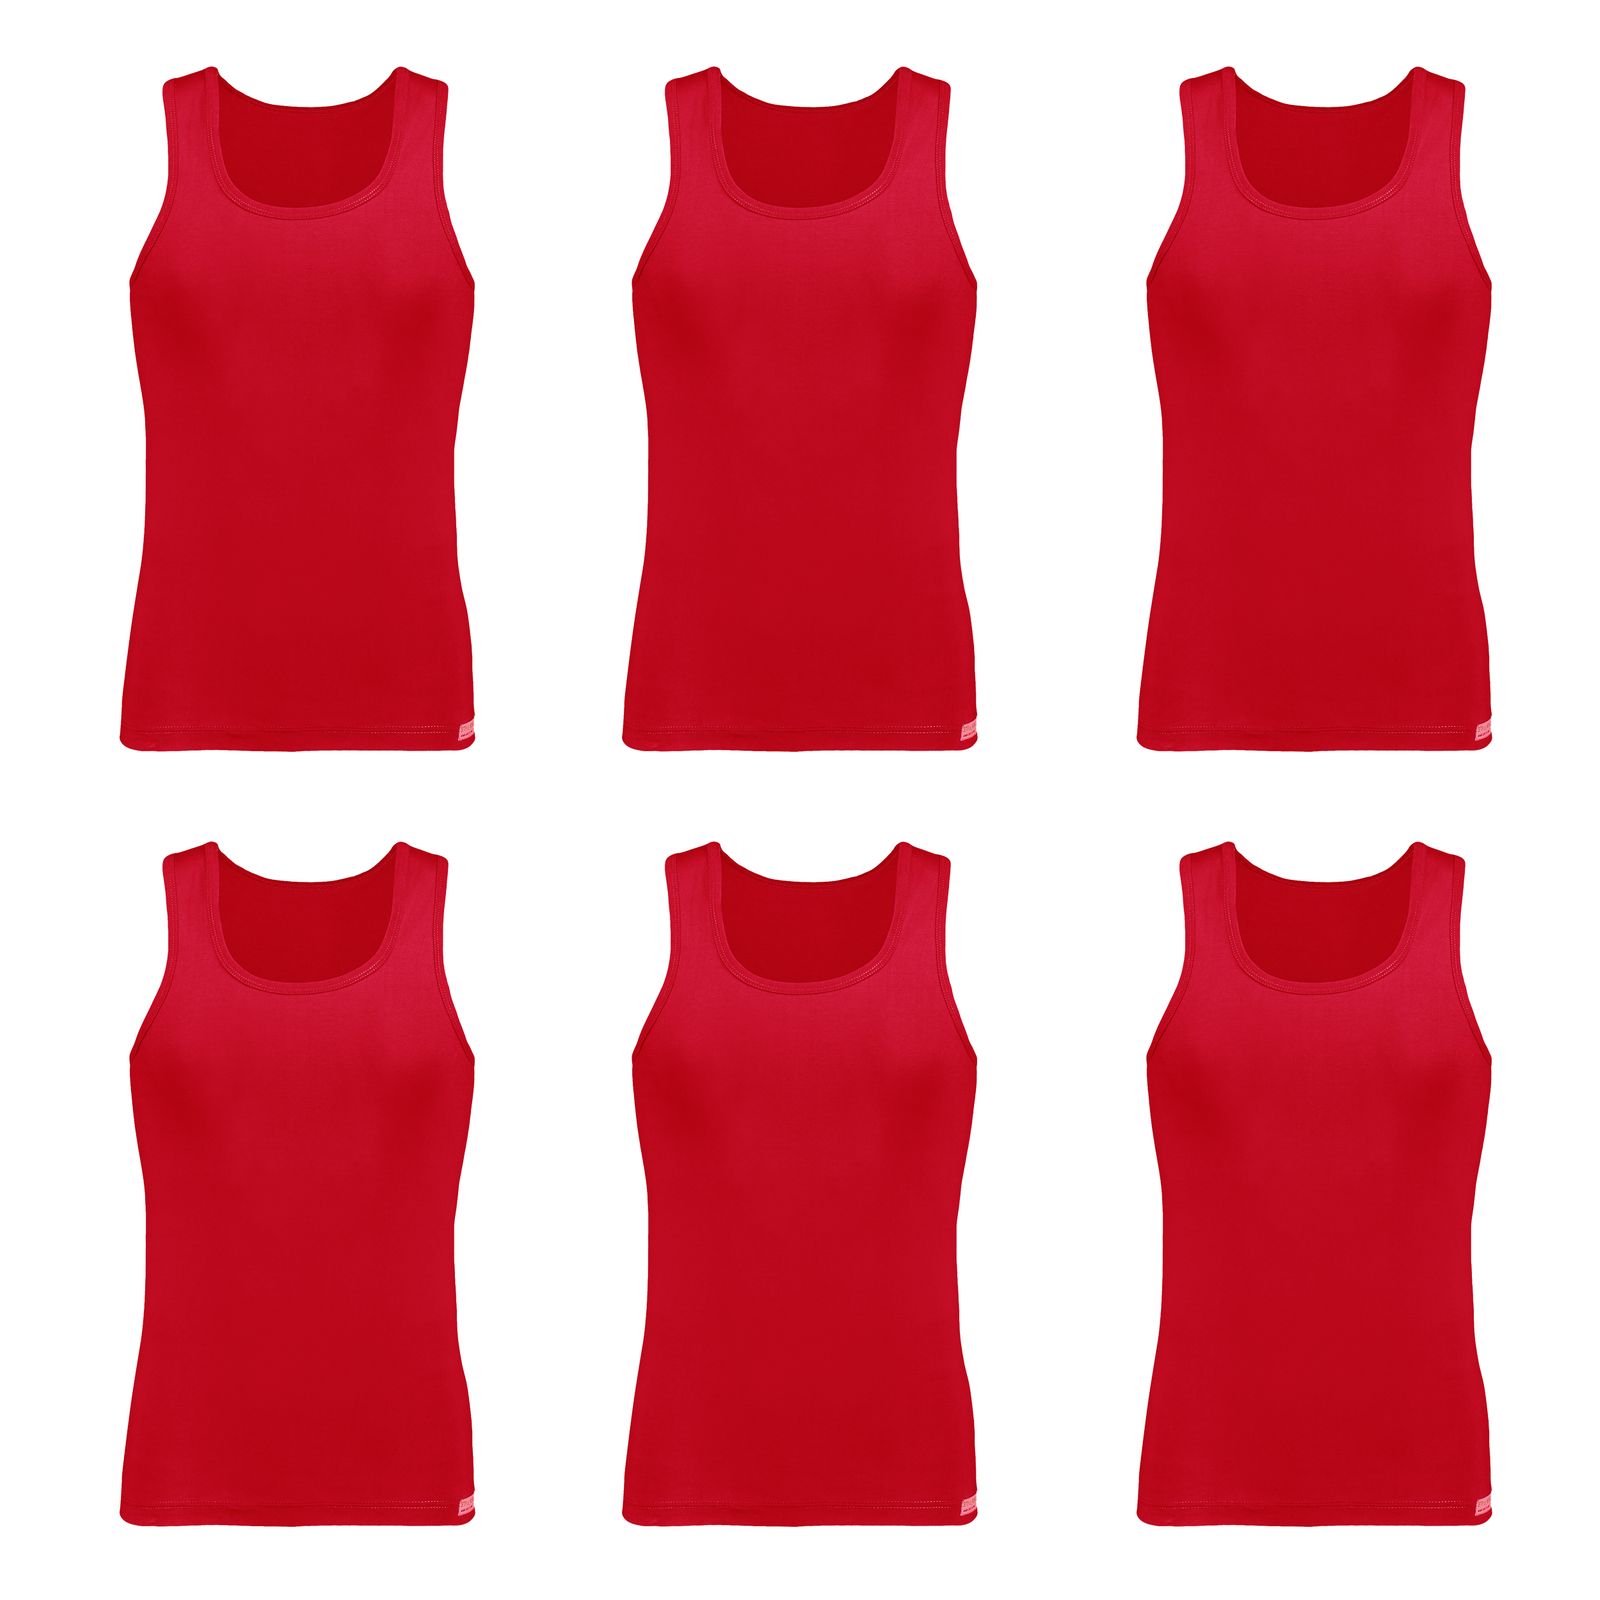 زیرپوش رکابی مردانه برهان تن پوش مدل 2-01 رنگ قرمز بسته 6 عددی